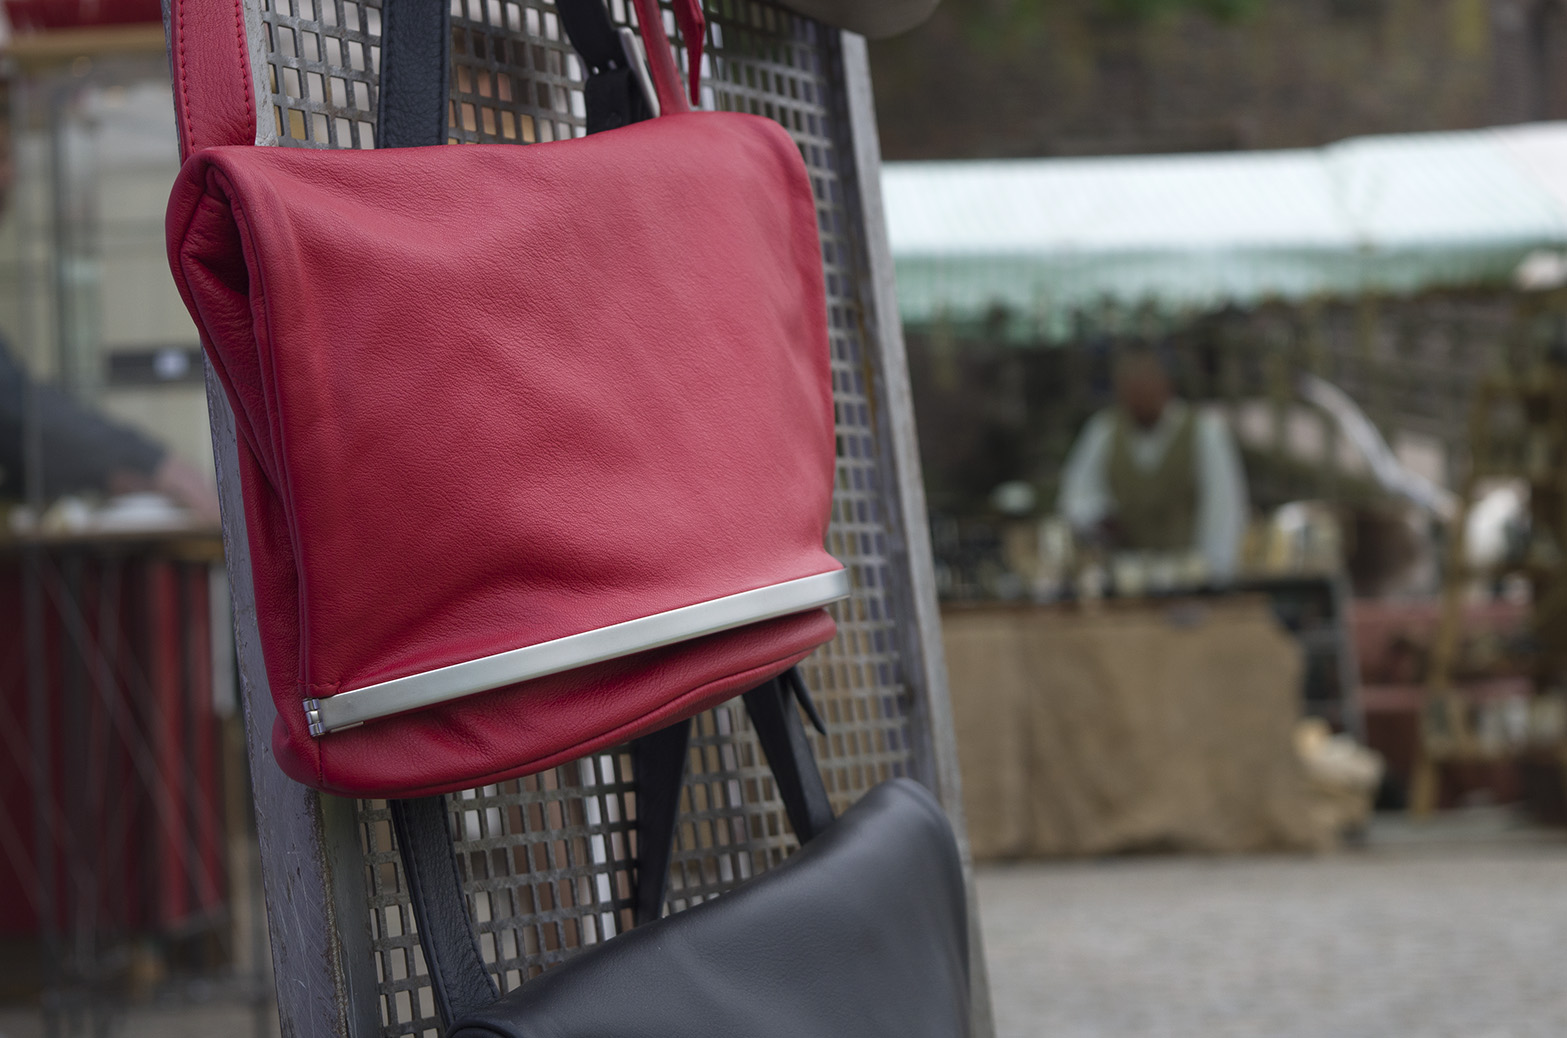 Olbrish handbag Wandelbar in burgundy hangs on a grid at a crafts market